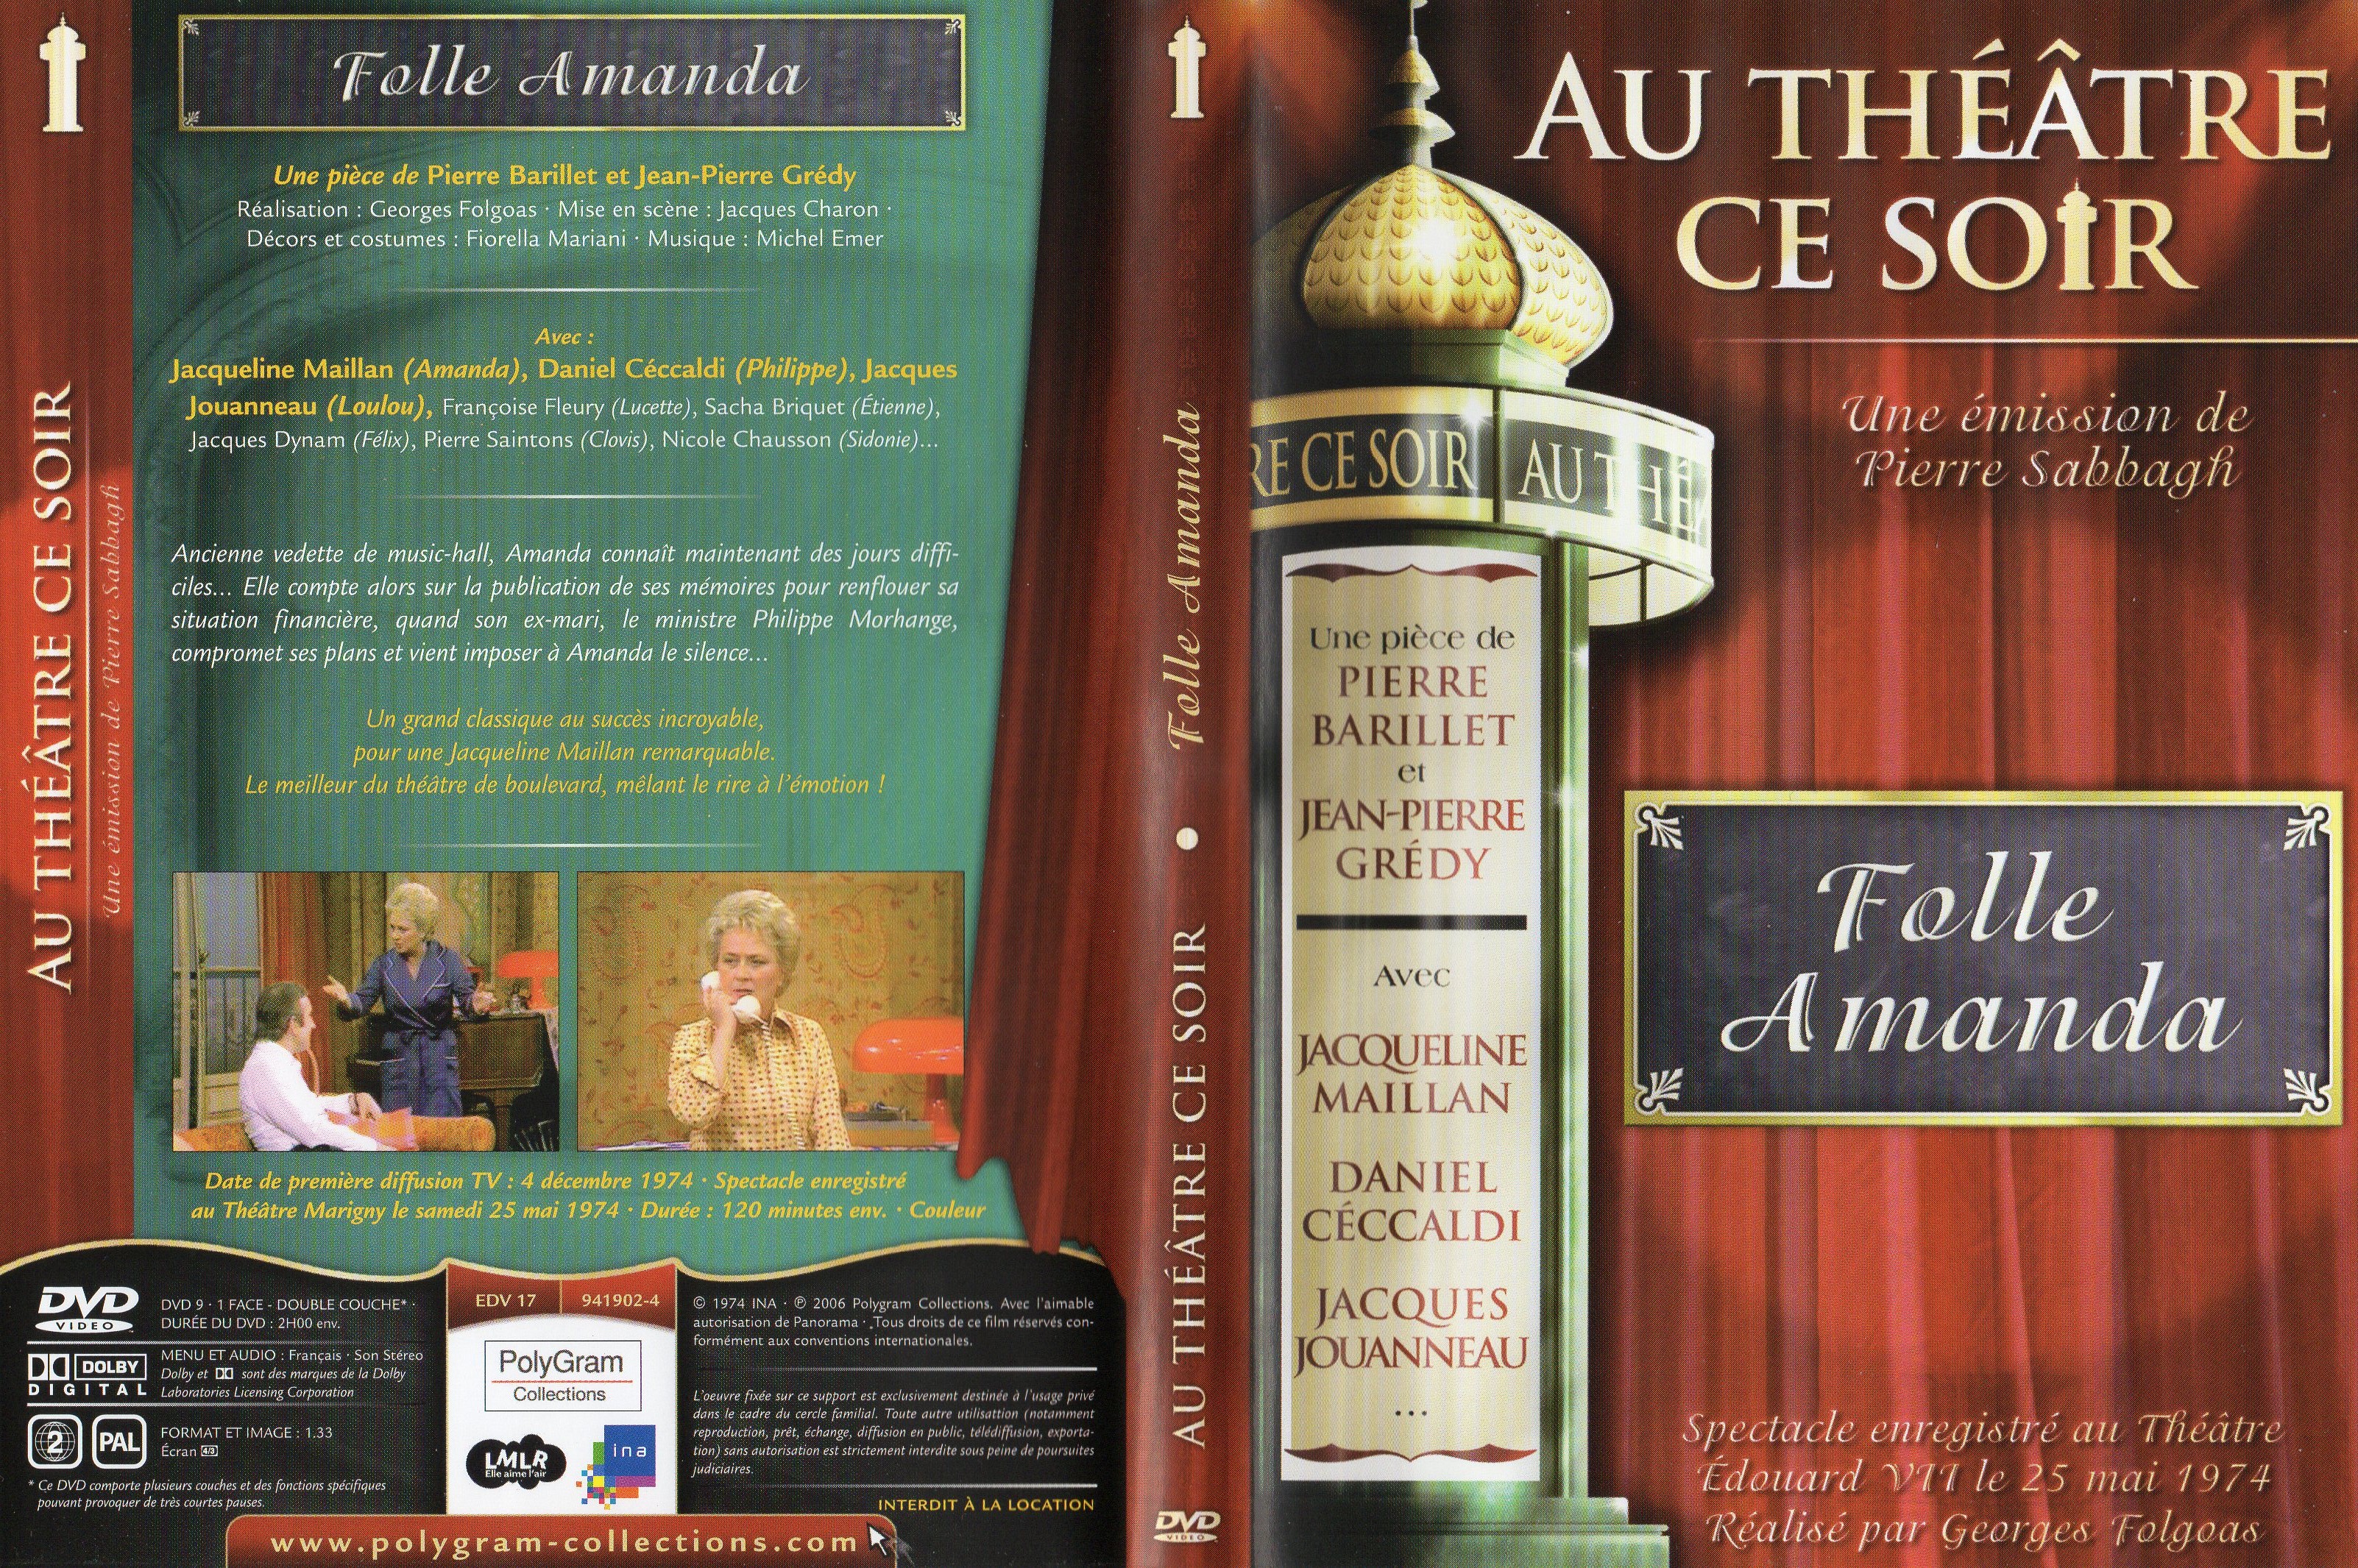 Jaquette DVD Au thatre ce soir - Folle Amanda v2